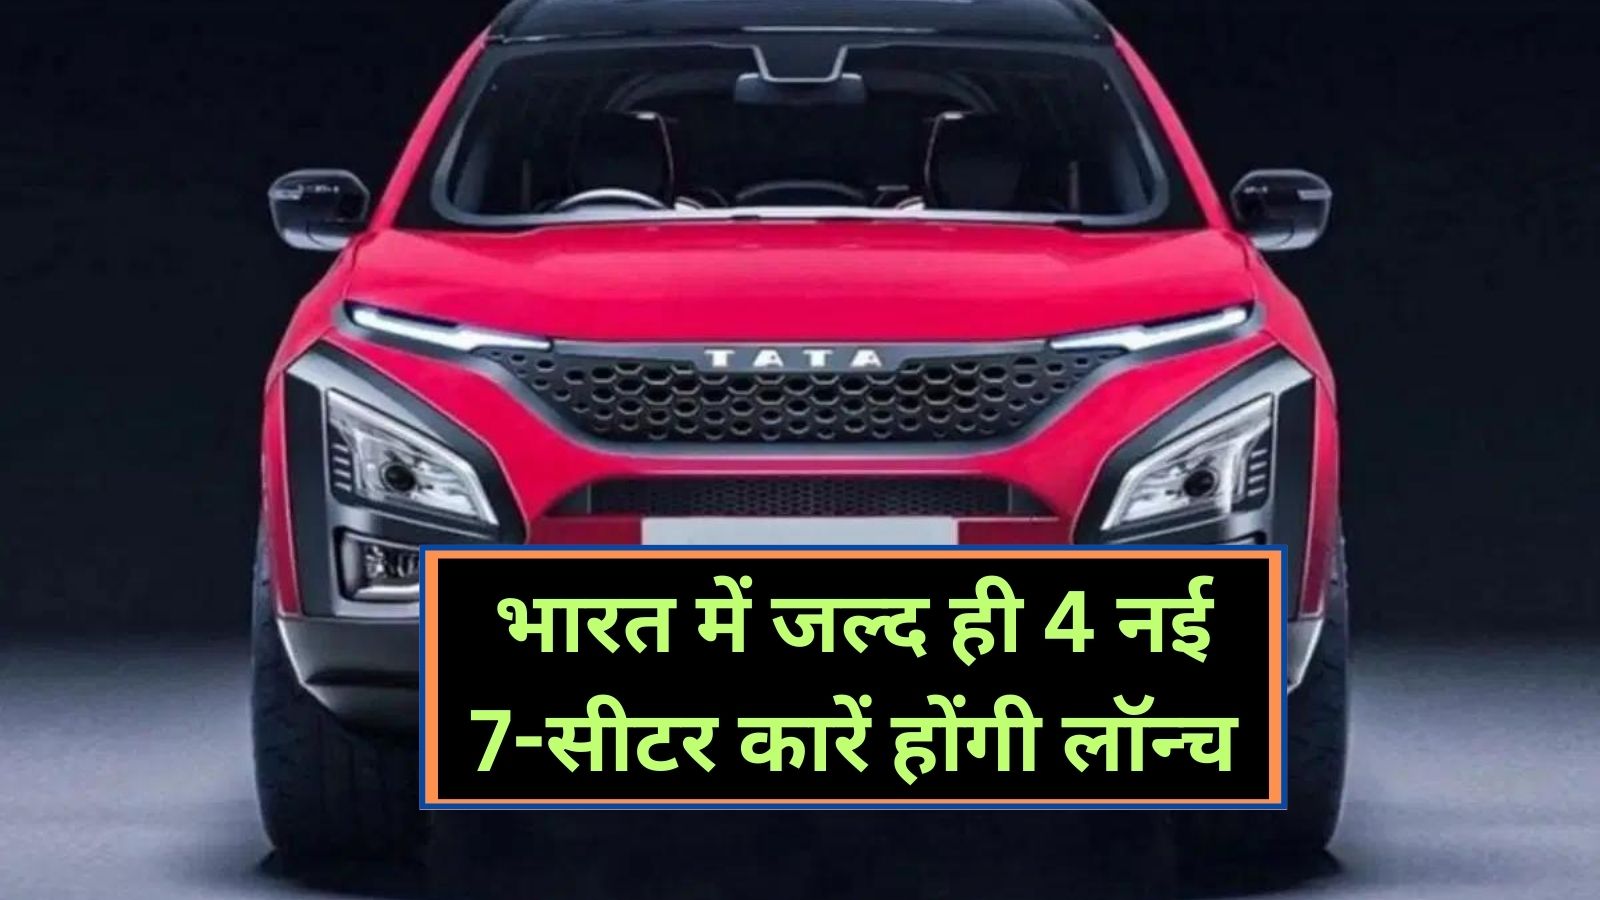 Upcoming Car: भारत में जल्द ही 4 नई 7-सीटर कारें होंगी लॉन्च, जानिए कौन कौन सी कारे होगी लॉन्च